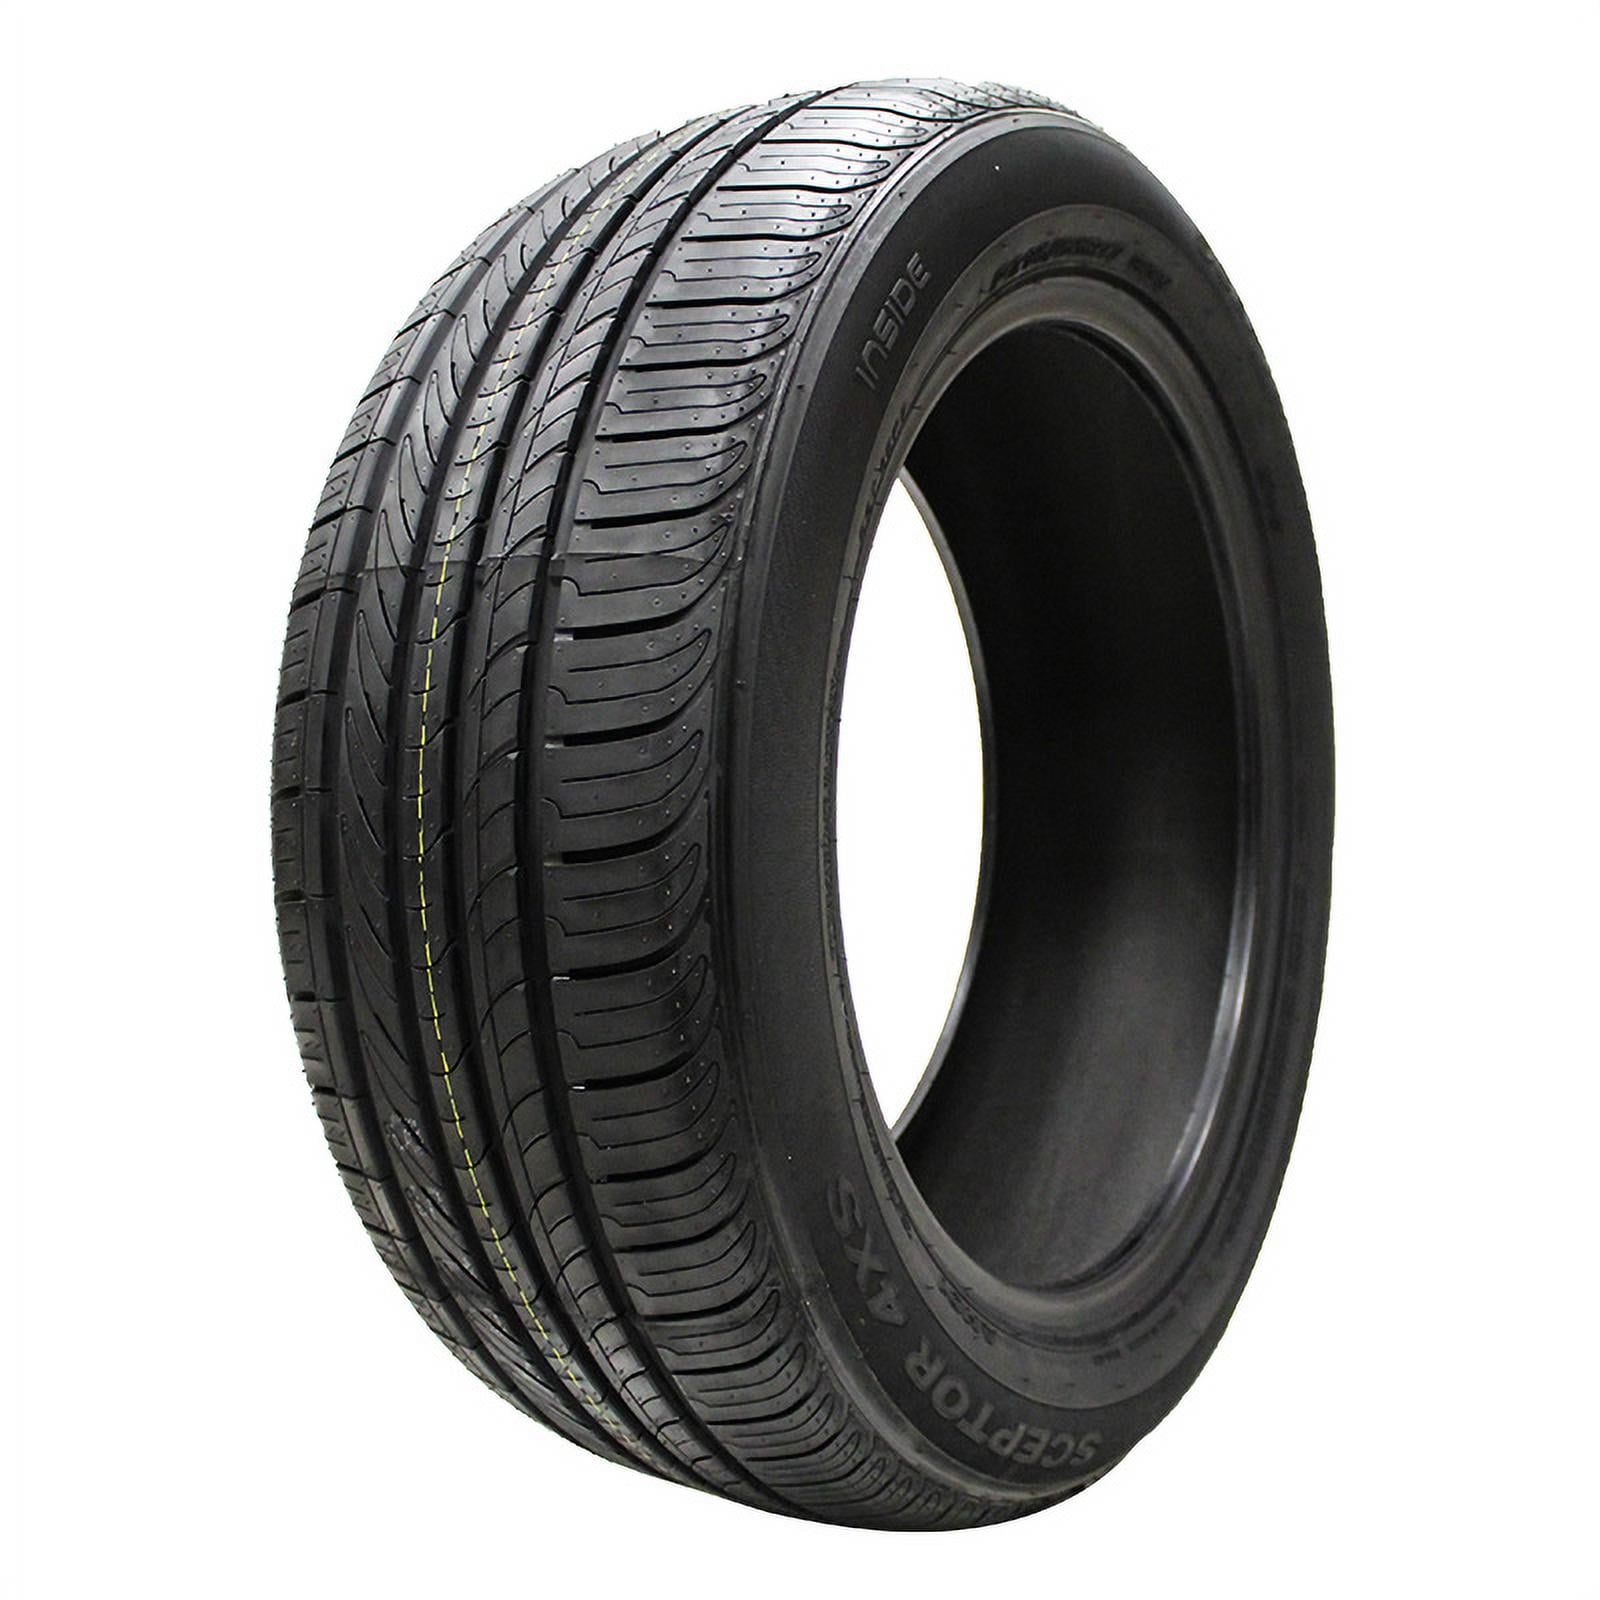 2055516 205/55R16 Goodyear Eagle RSA Blk 89H New Tire Qty 1 